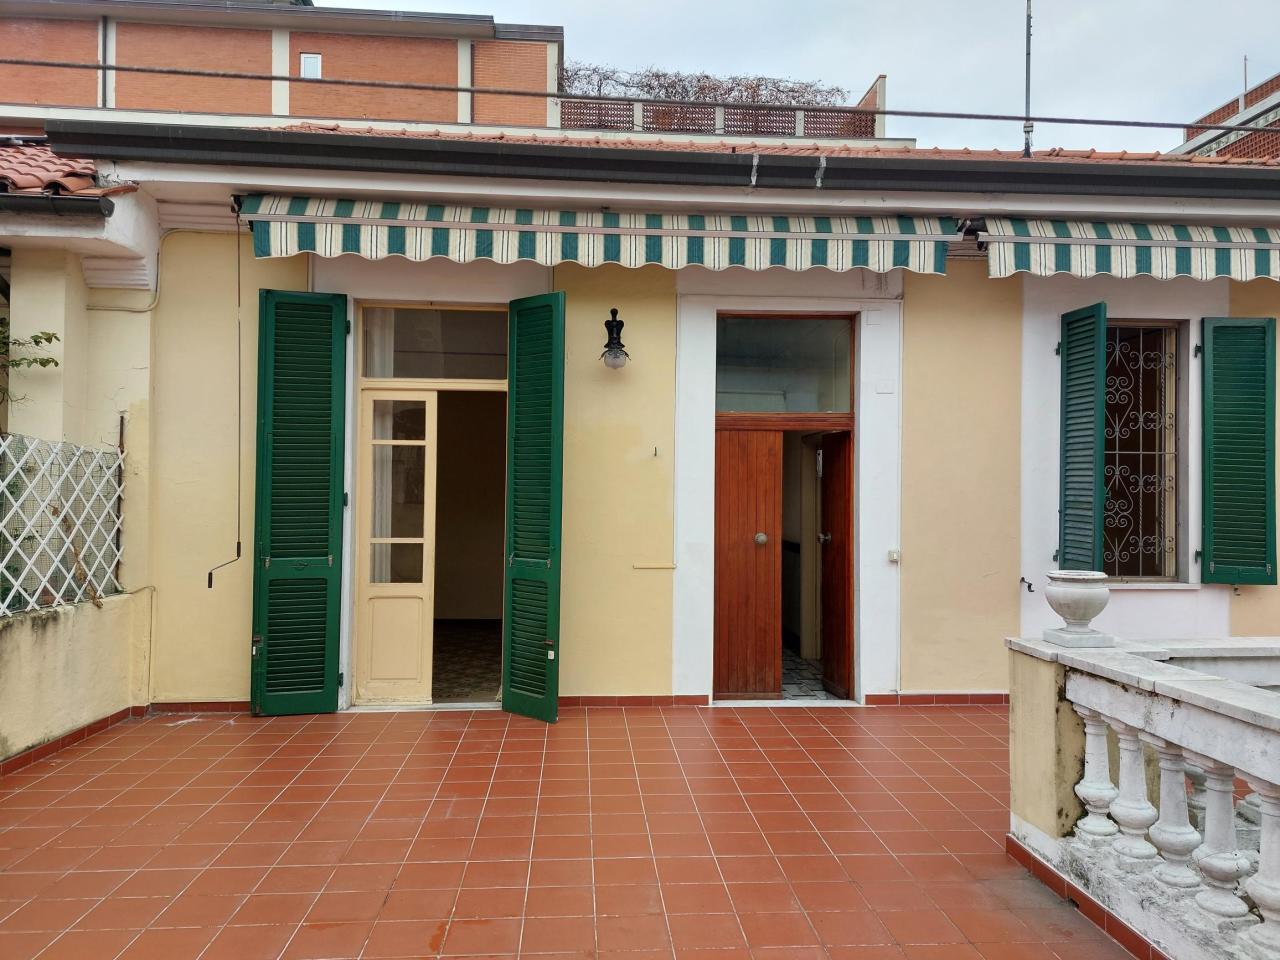 Soluzione Semindipendente in vendita a Carrara, 13 locali, prezzo € 250.000 | PortaleAgenzieImmobiliari.it